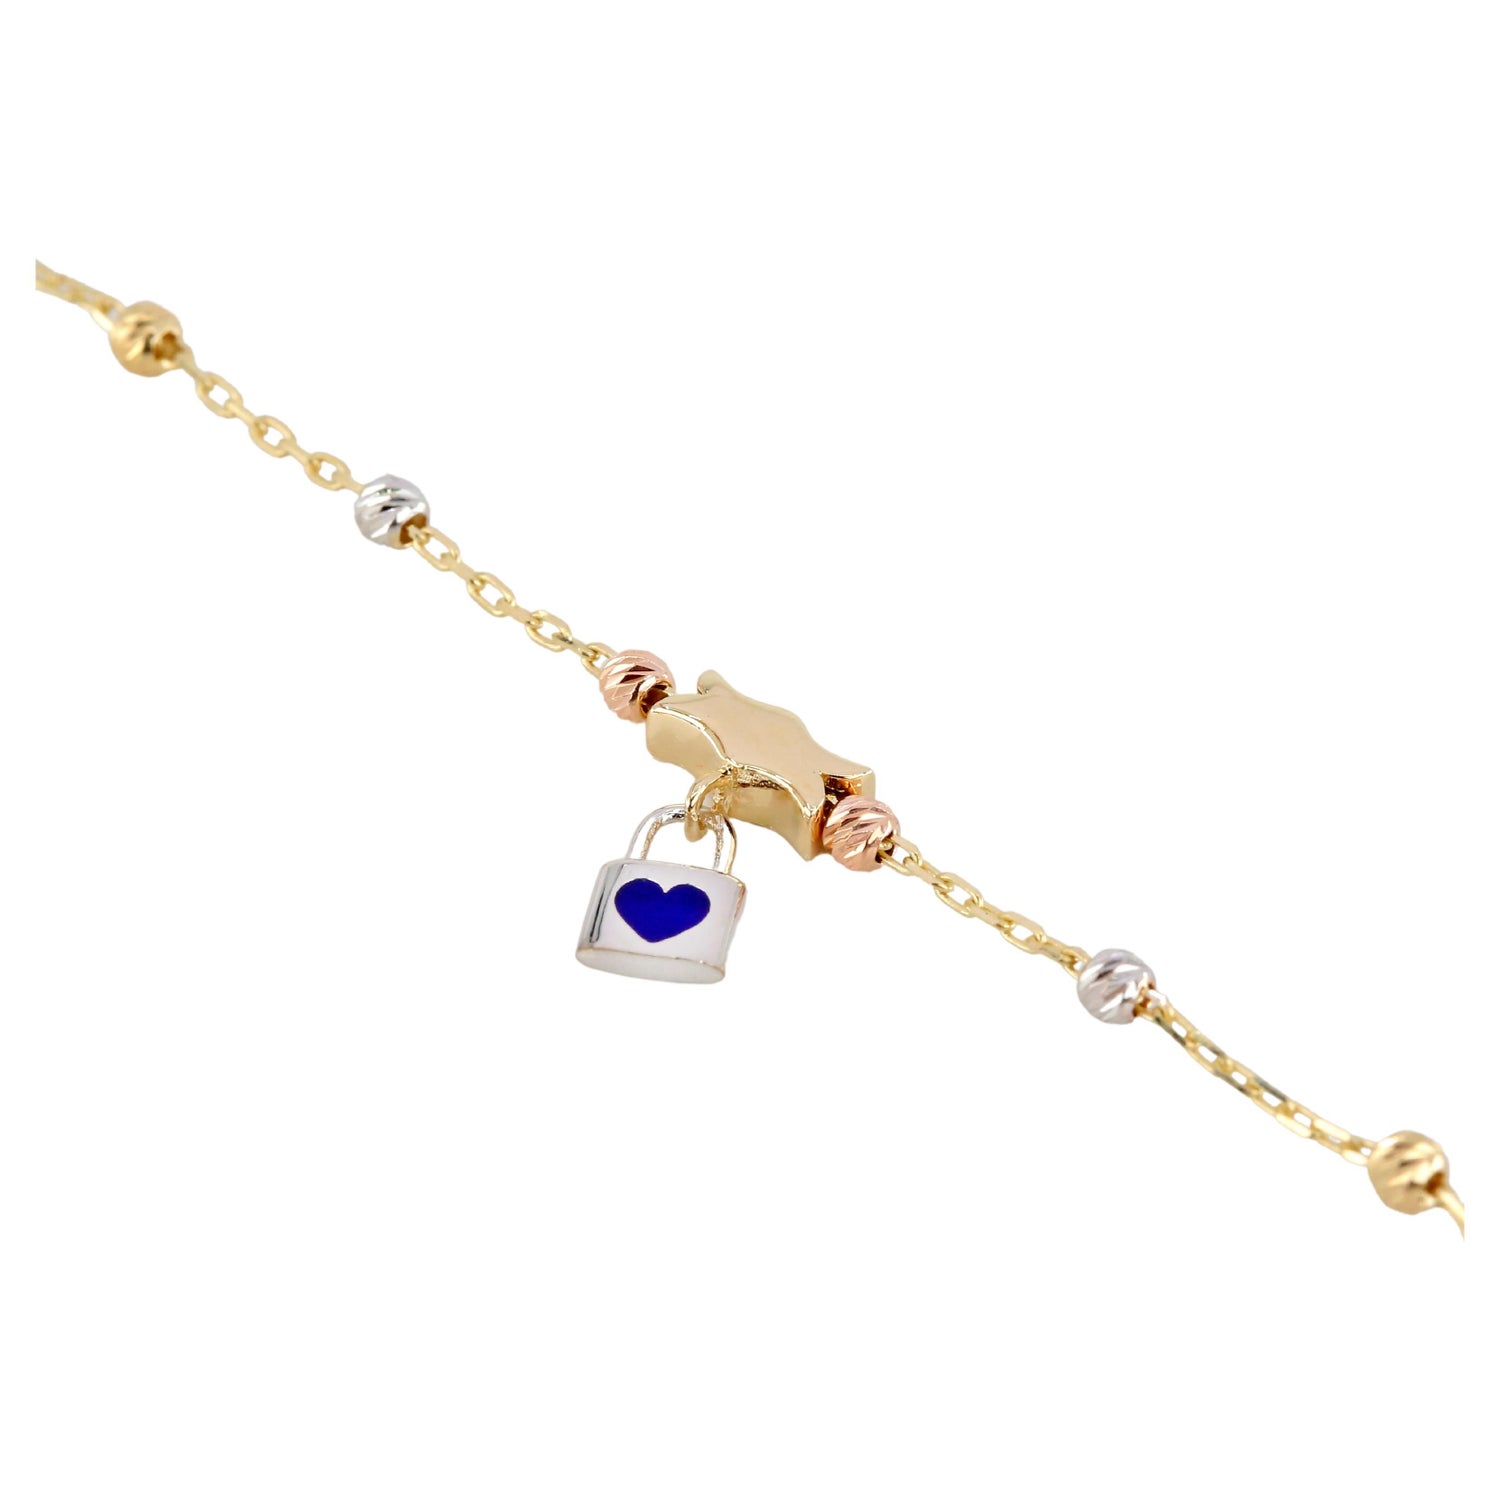 Louis Vuitton Style Elegant Enameled Fleur Jewelry Set